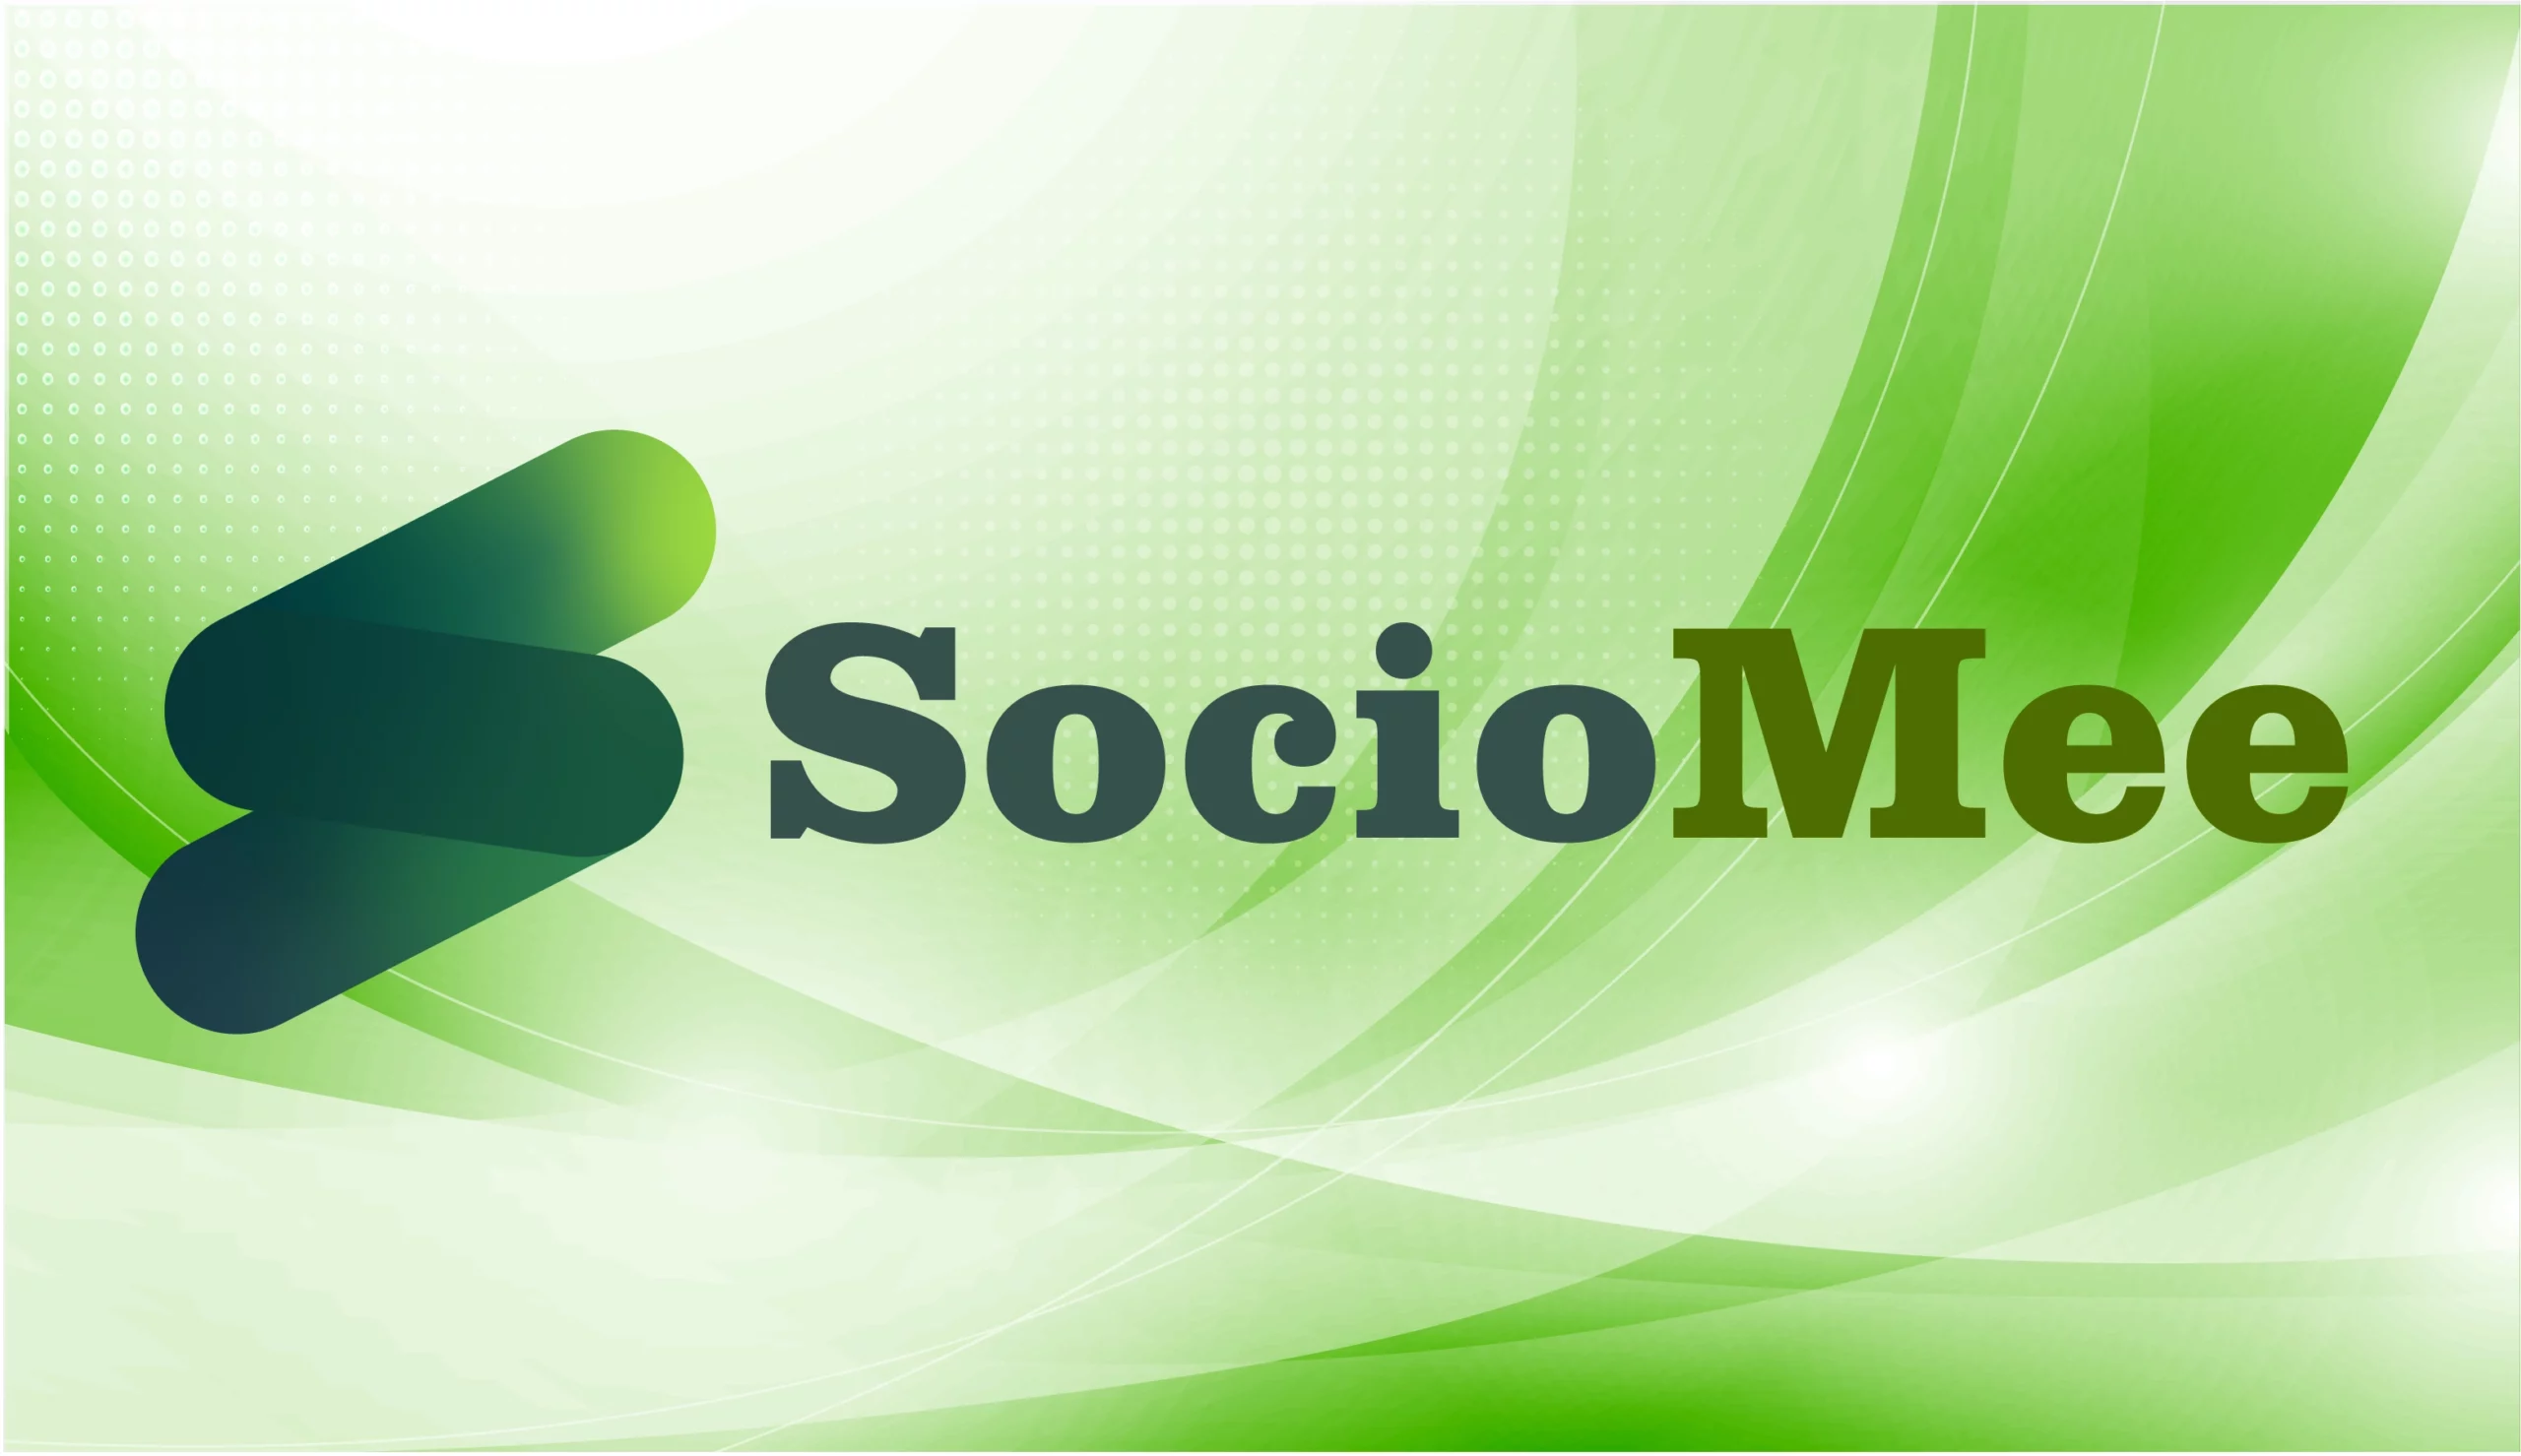 European Social Media Platform